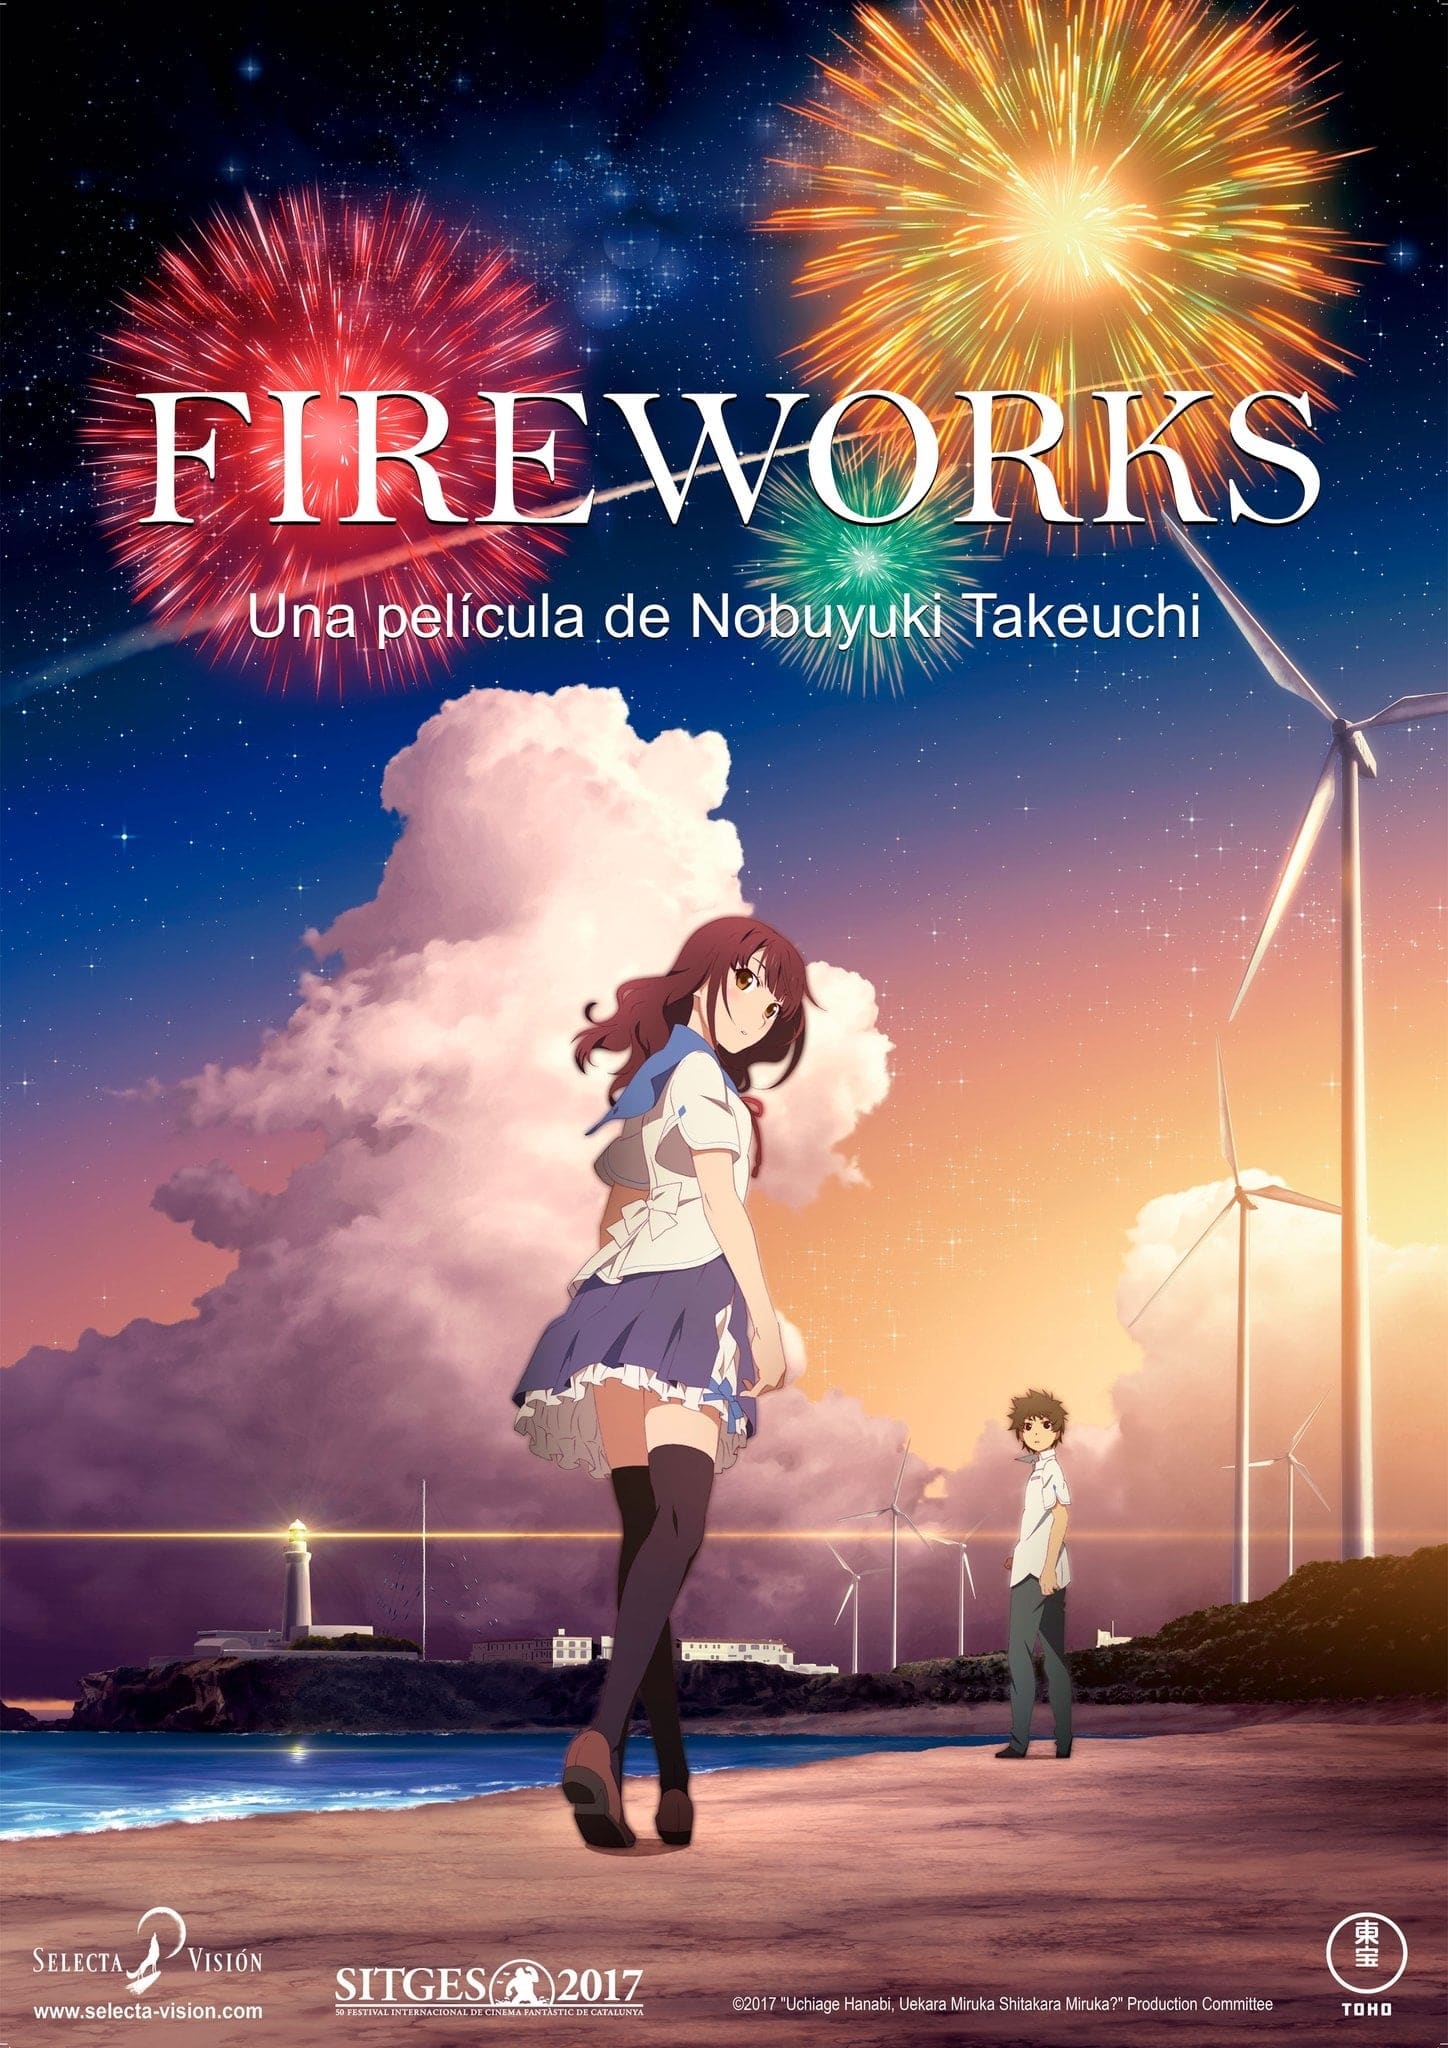 Plakat von "Fireworks"